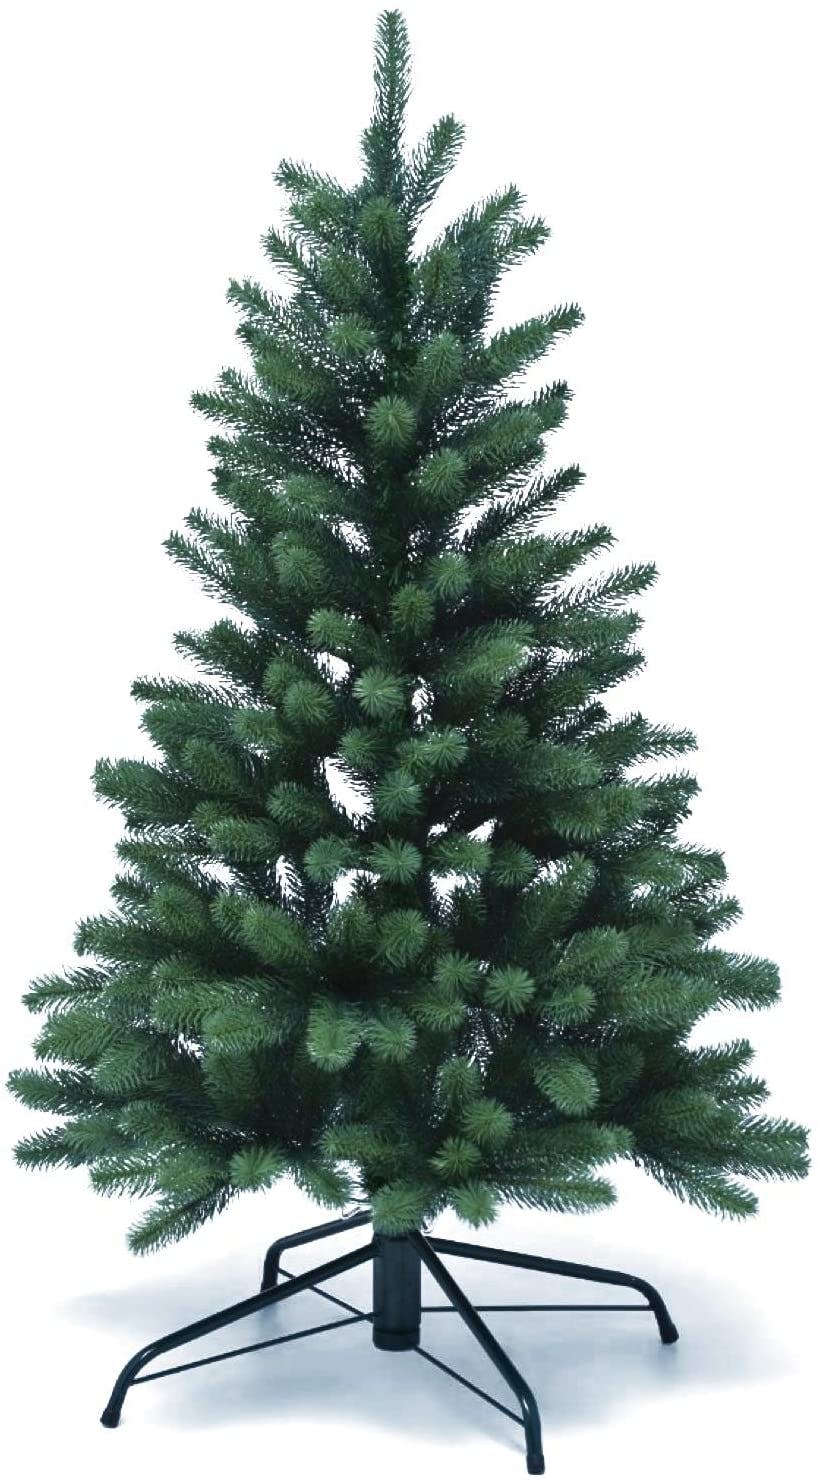 120cm Grun Künstlicher Christbaum Tannenbaum Weihnachtsbaum Kunstbaum mit Schnee 